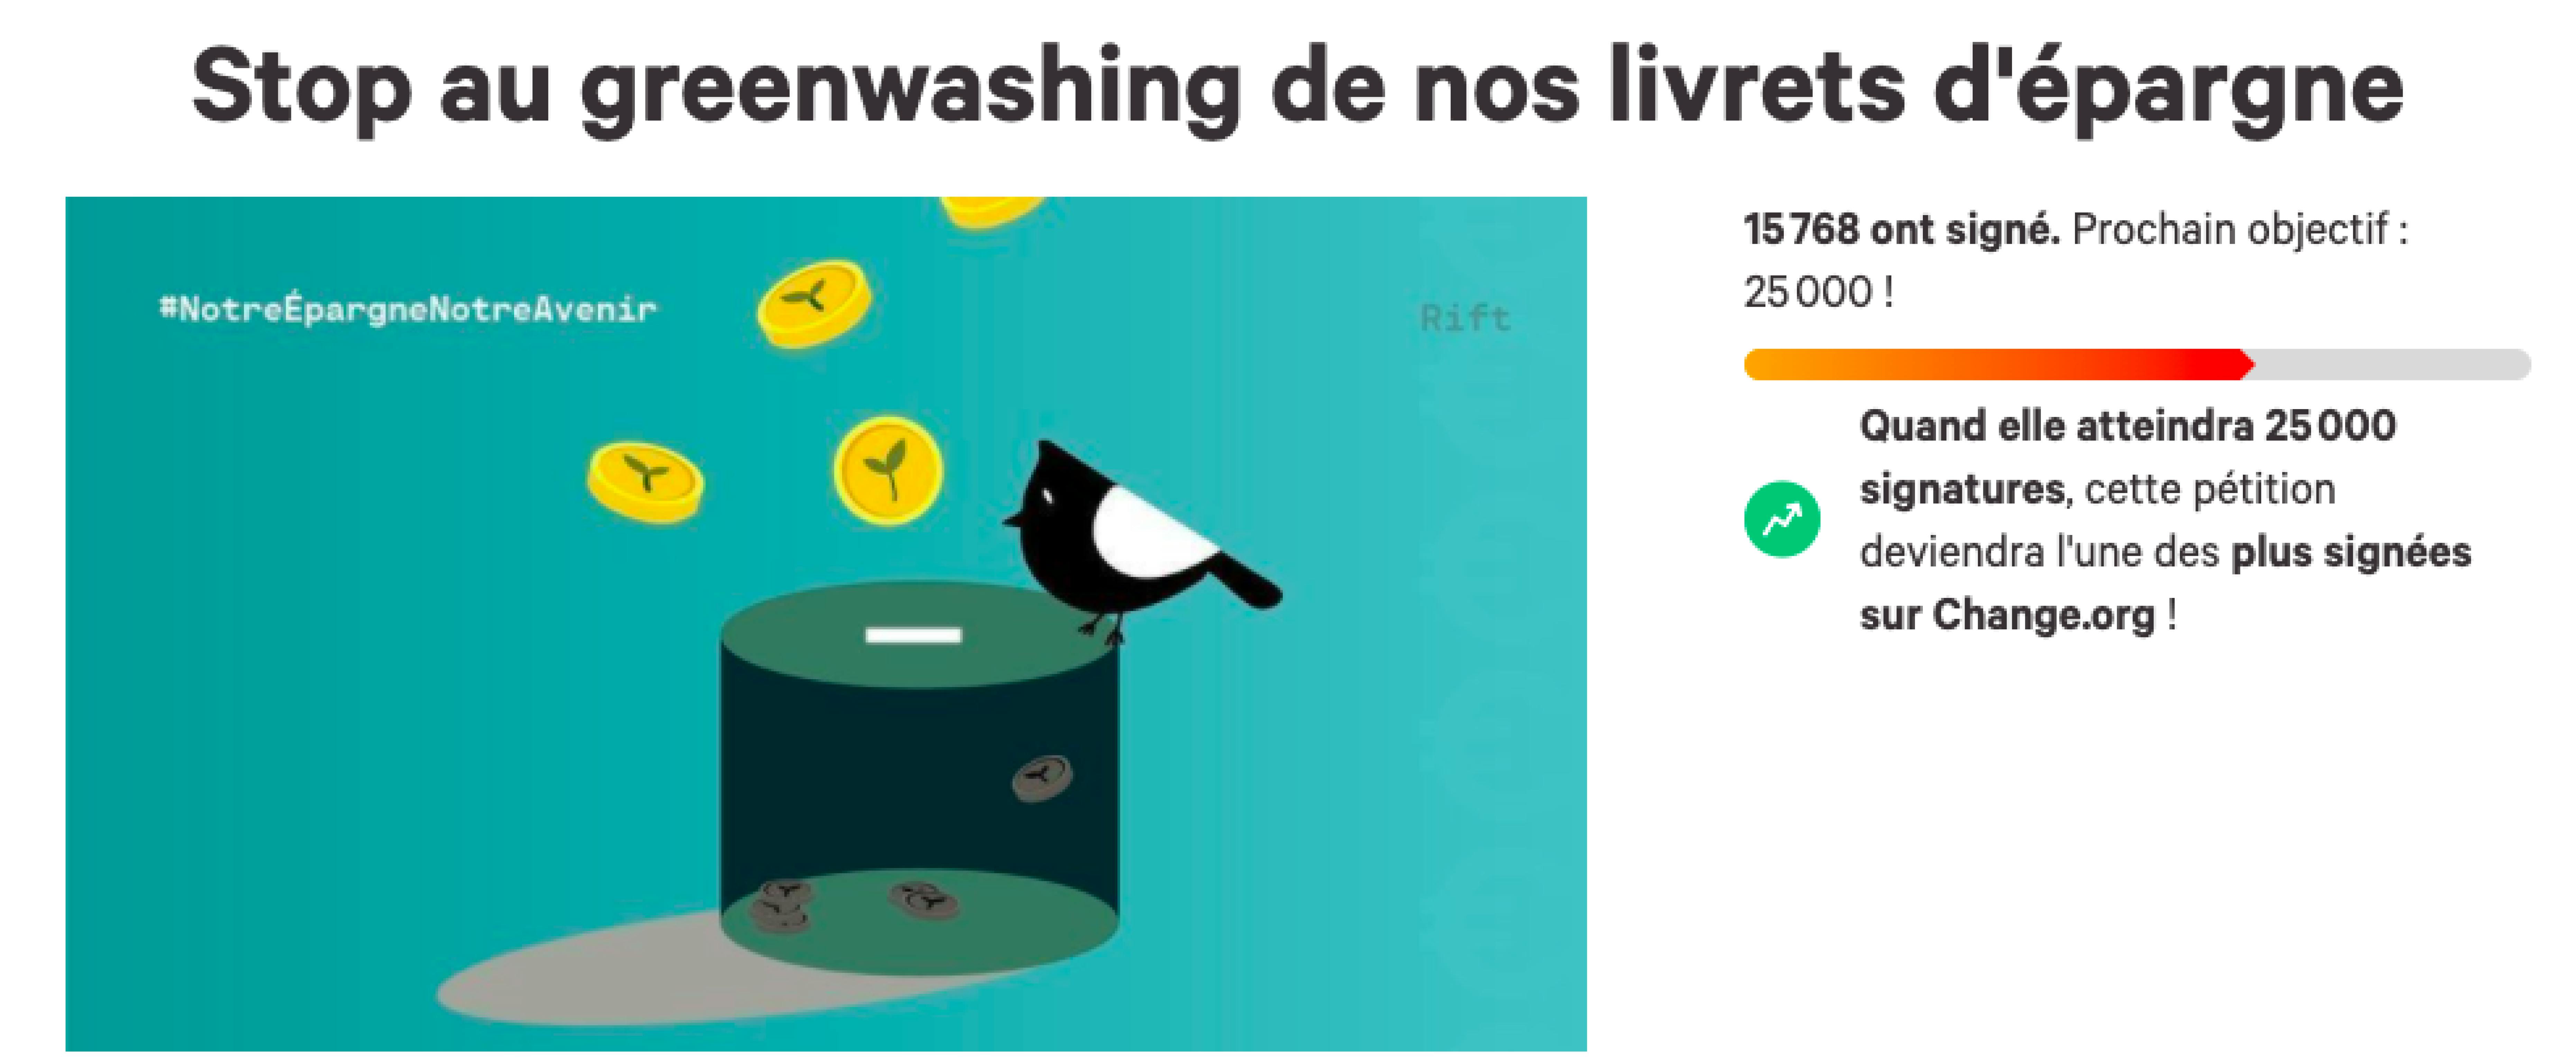 La pétition “Stop au greenwashing de nos livrets d’épargne” par Eva Sadoun sur Change.org